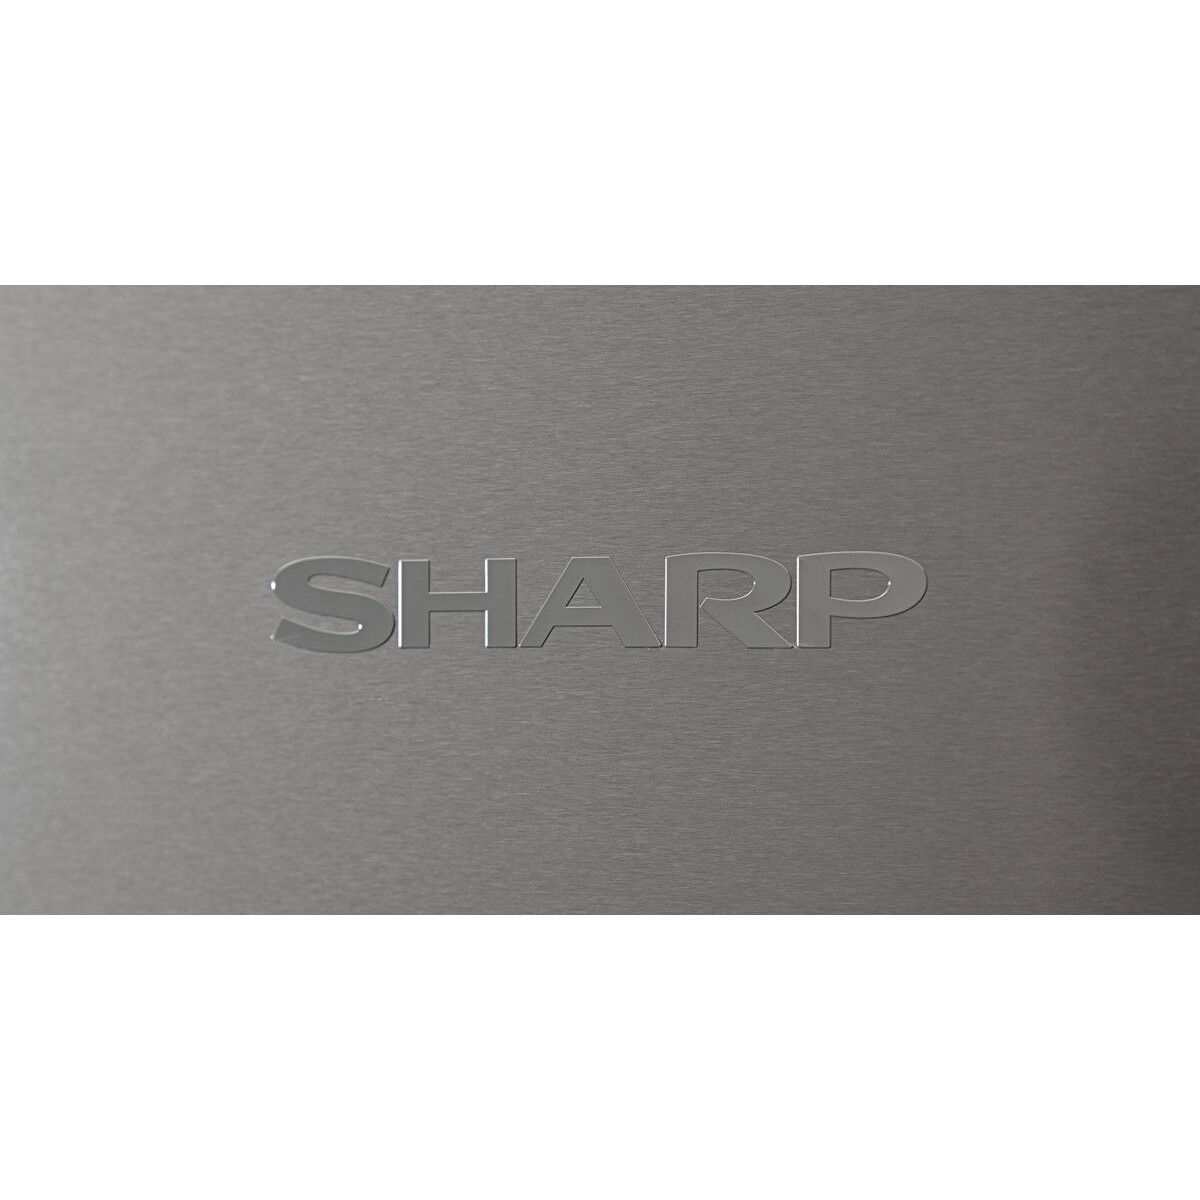 Холодильники Sharp SJ-FTB01ITXWE белый